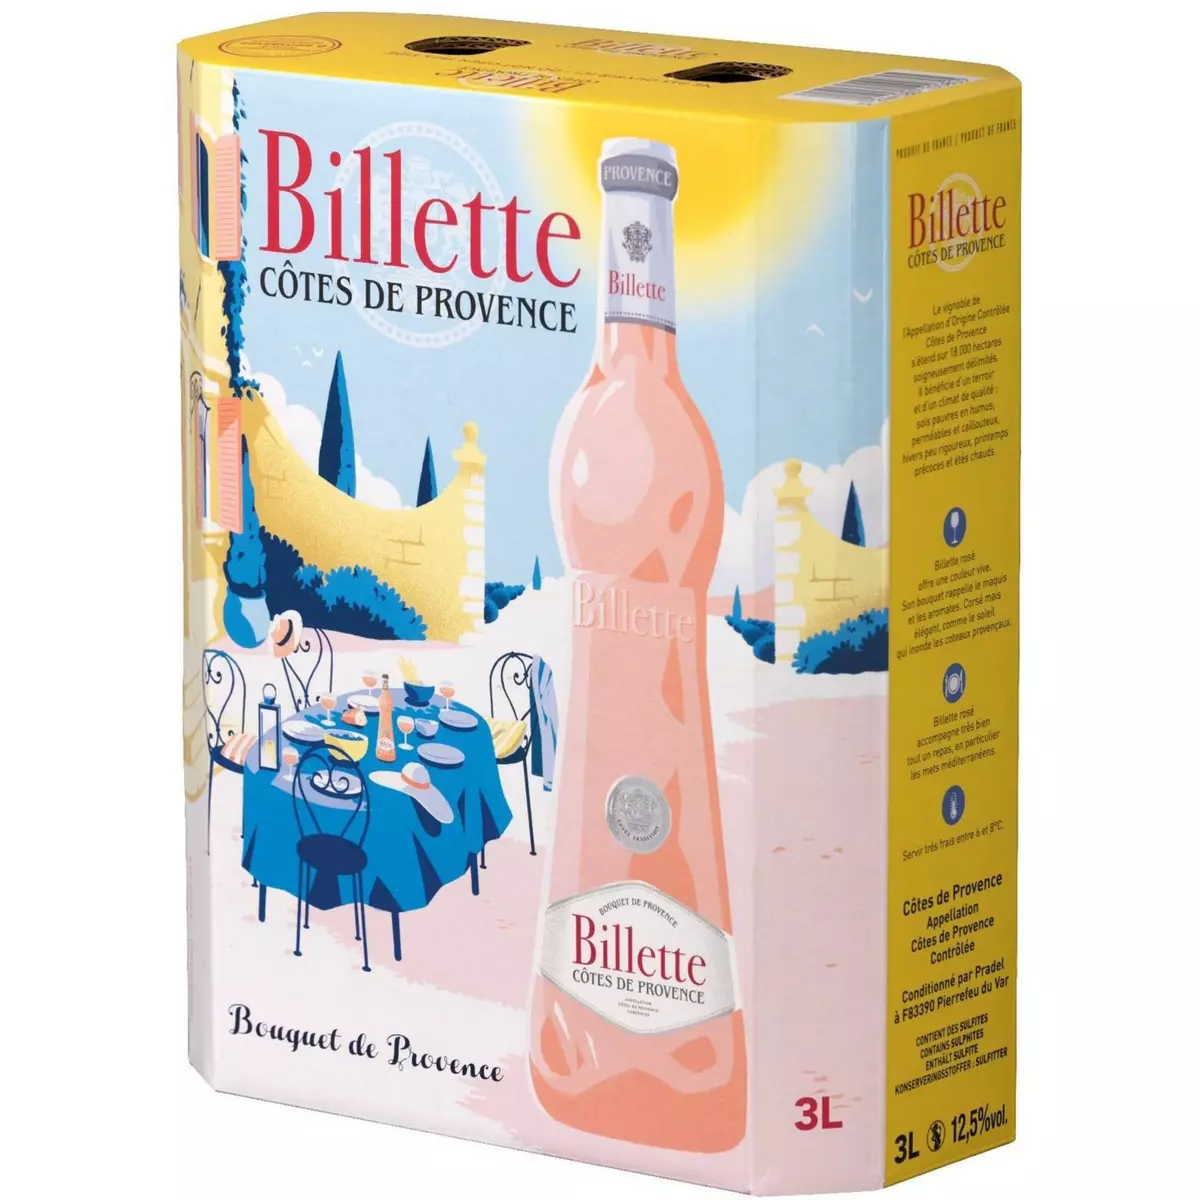 BILLETTE AOP Côtes-de-Provence cuvée tradition rosé bib 3L